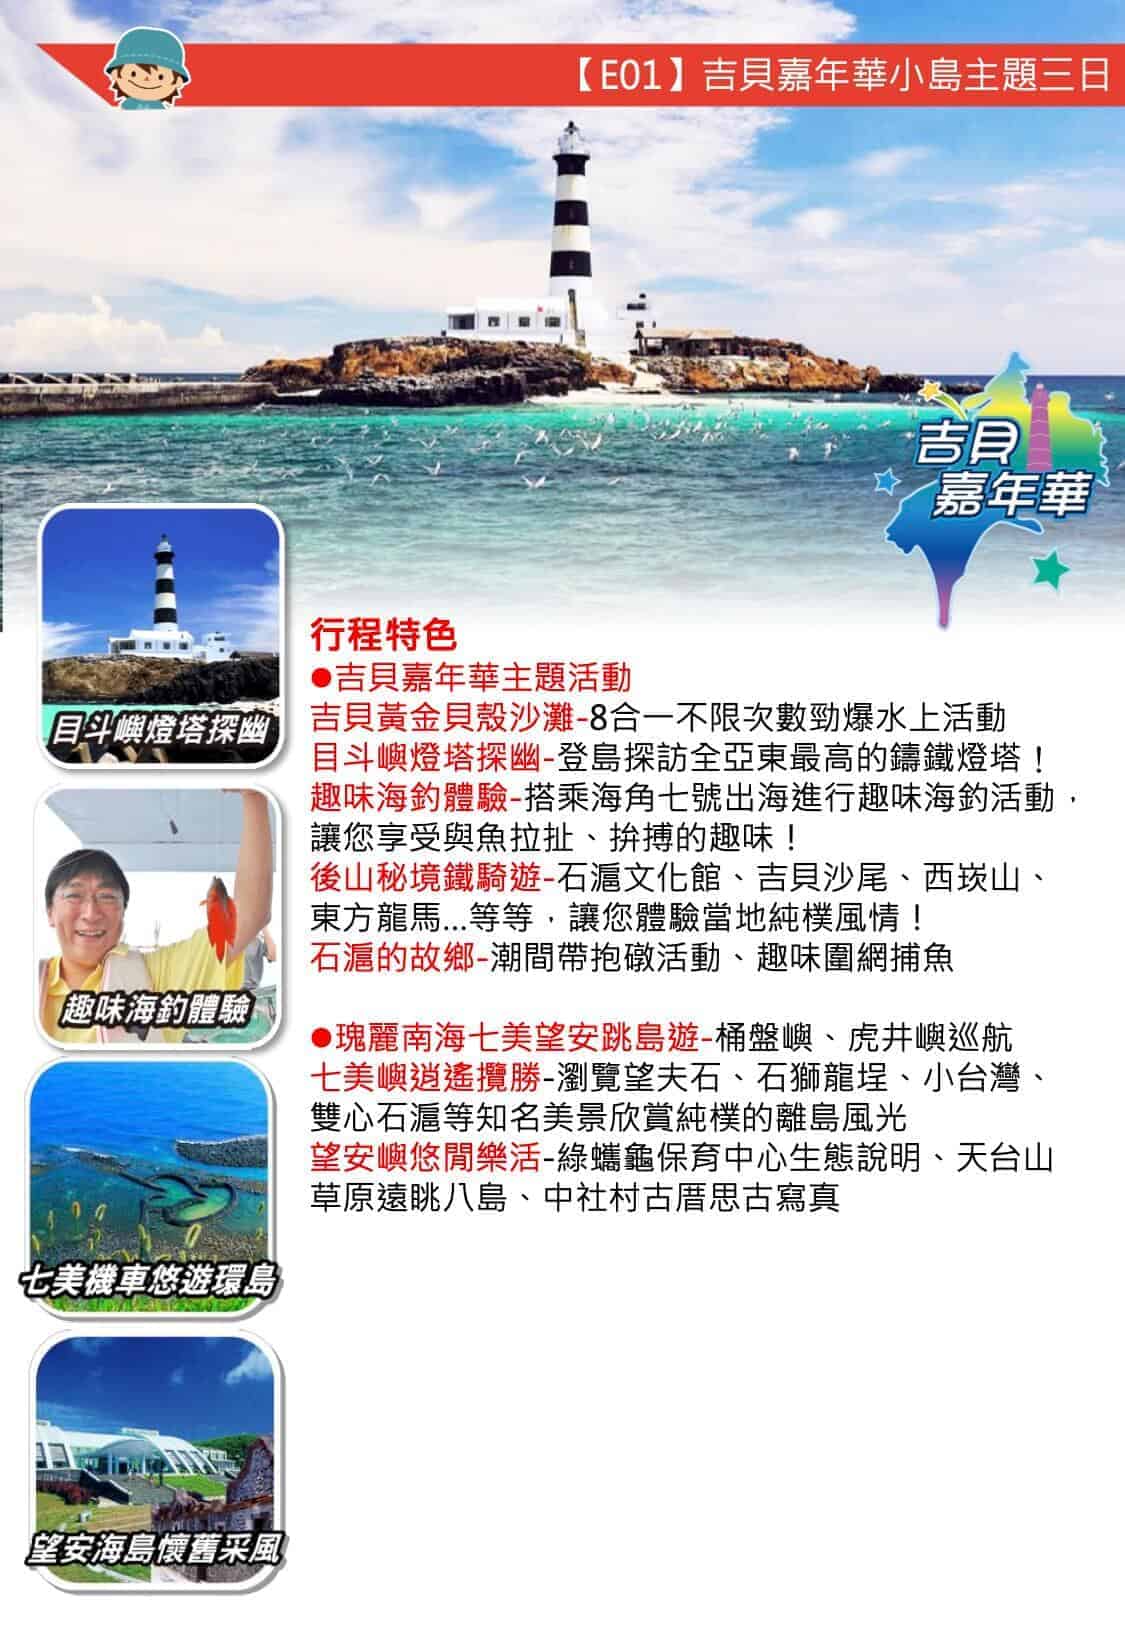 澎湖團體行程 |自由先生 印象旅行社